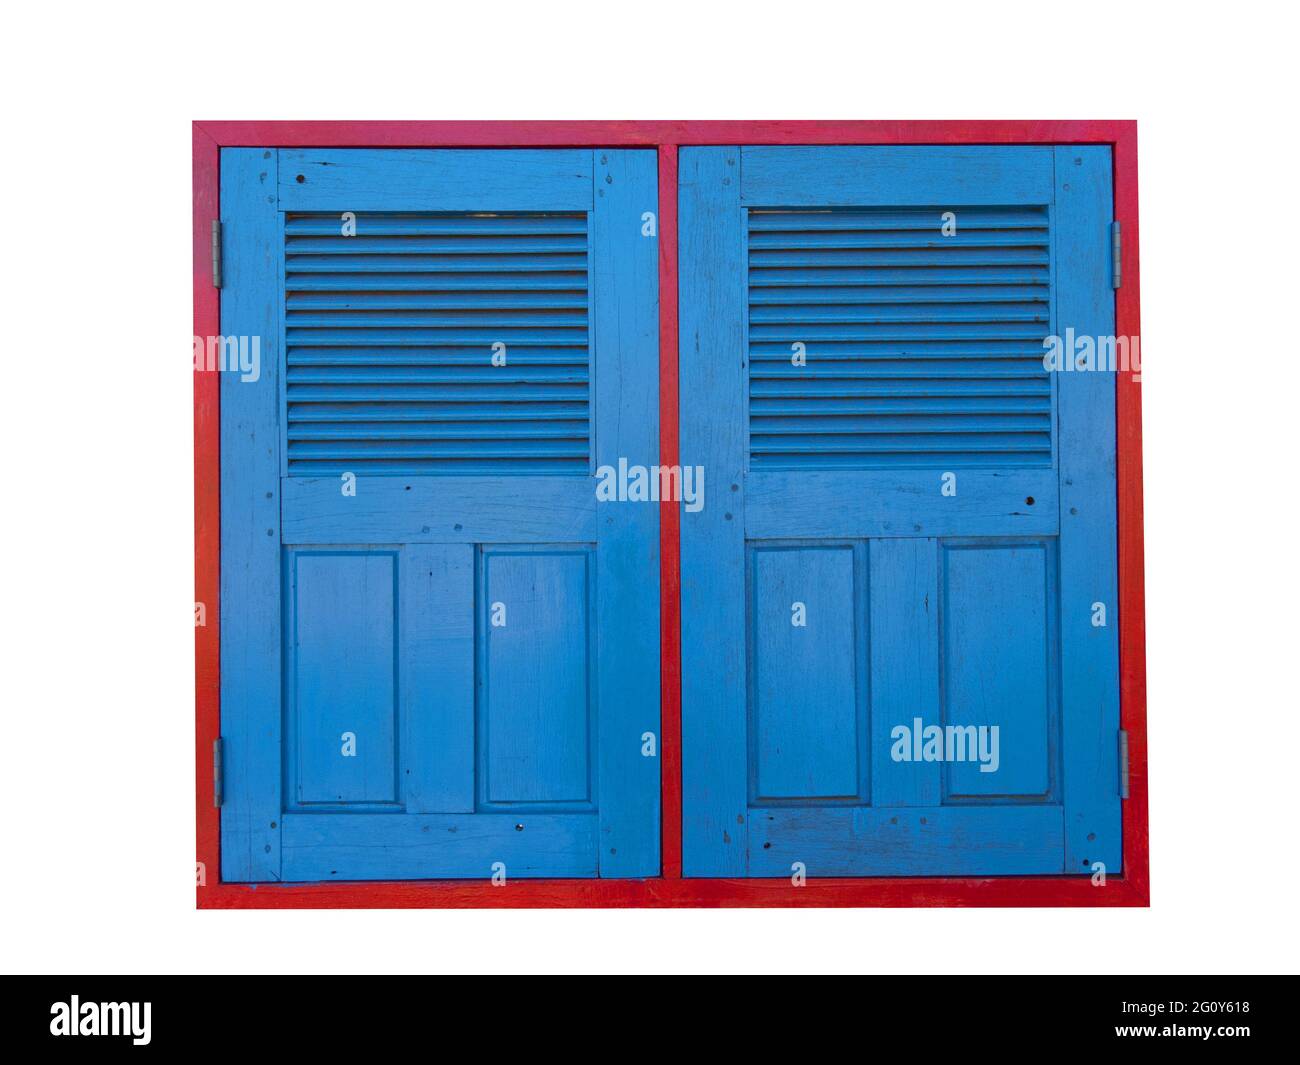 Belle fenêtre en bois dans les couleurs bleu et rouge cadre, fenêtre fermée, style vintage, isolé sur fond blanc. Banque D'Images